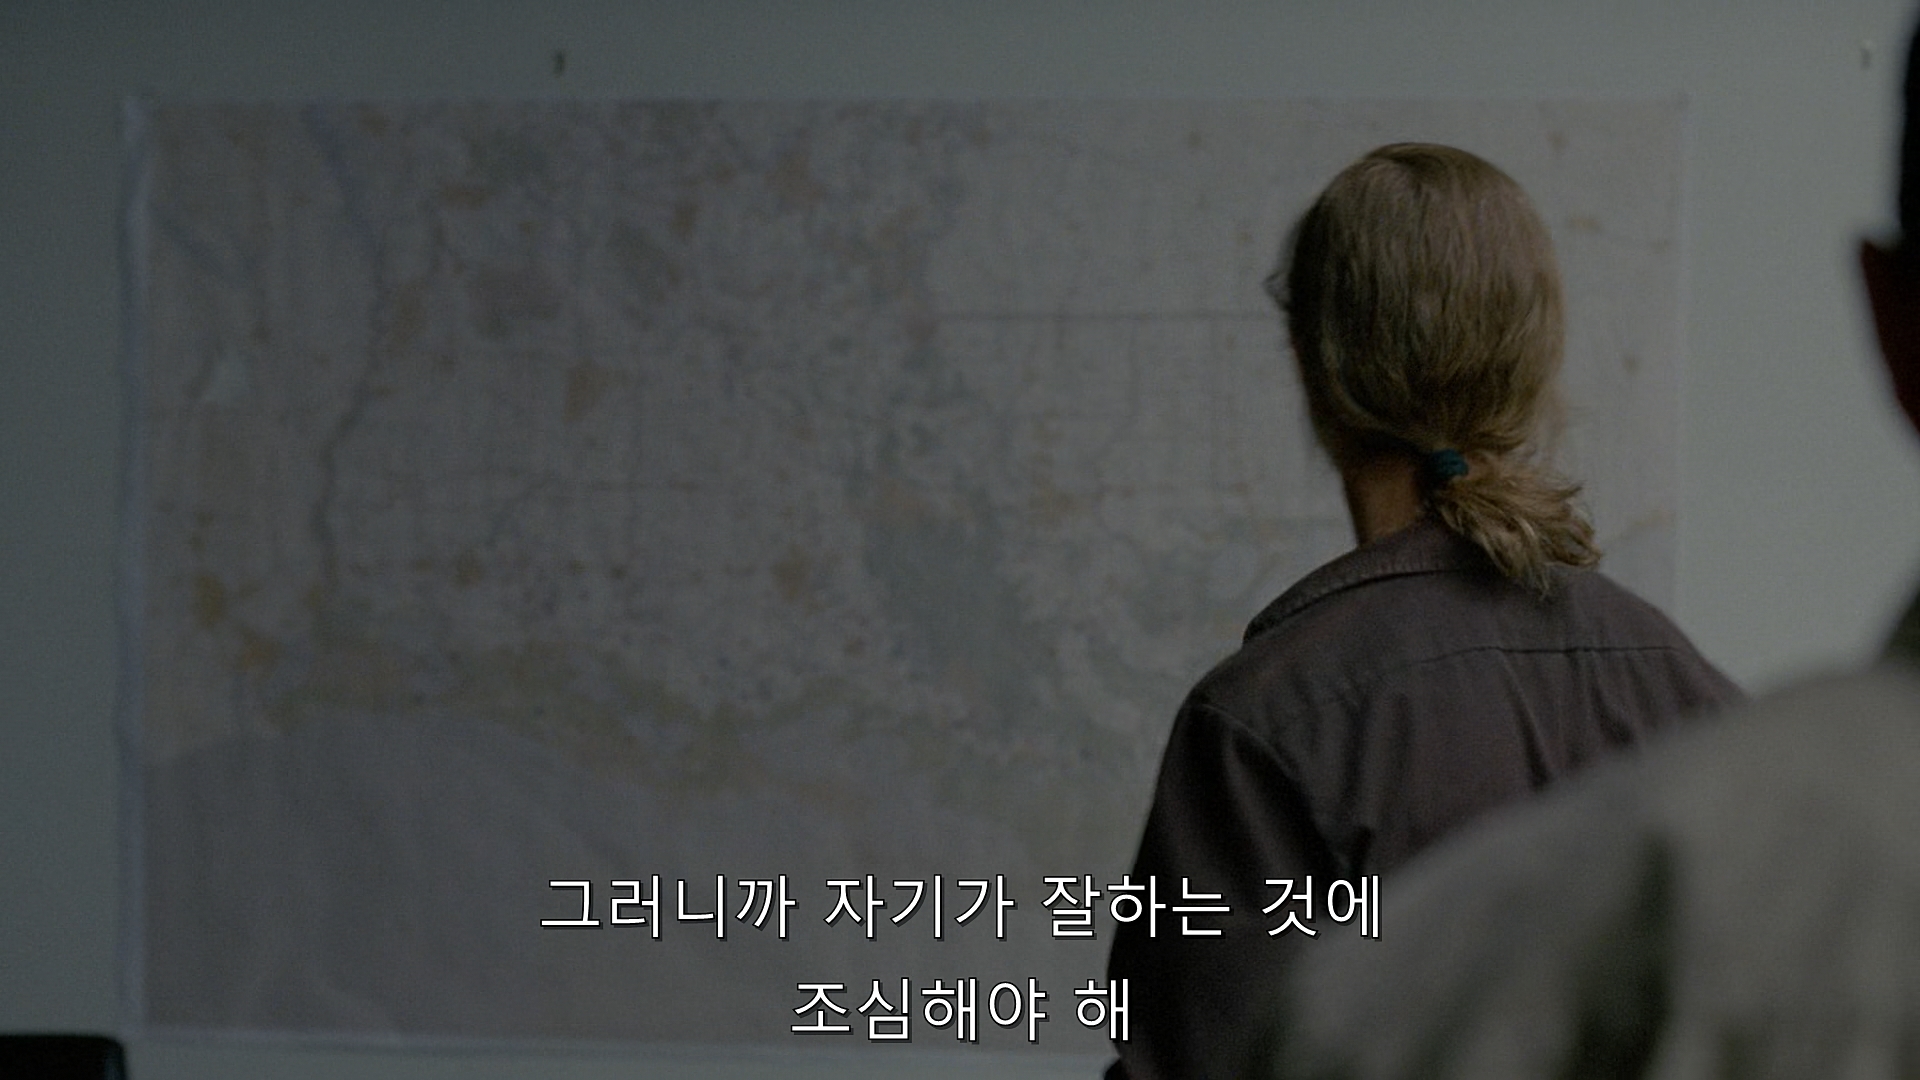 True Detective (2014) - S01E07 - After You've Gone (1080p BluRay x265 afm72).mkv_001687440.jpg